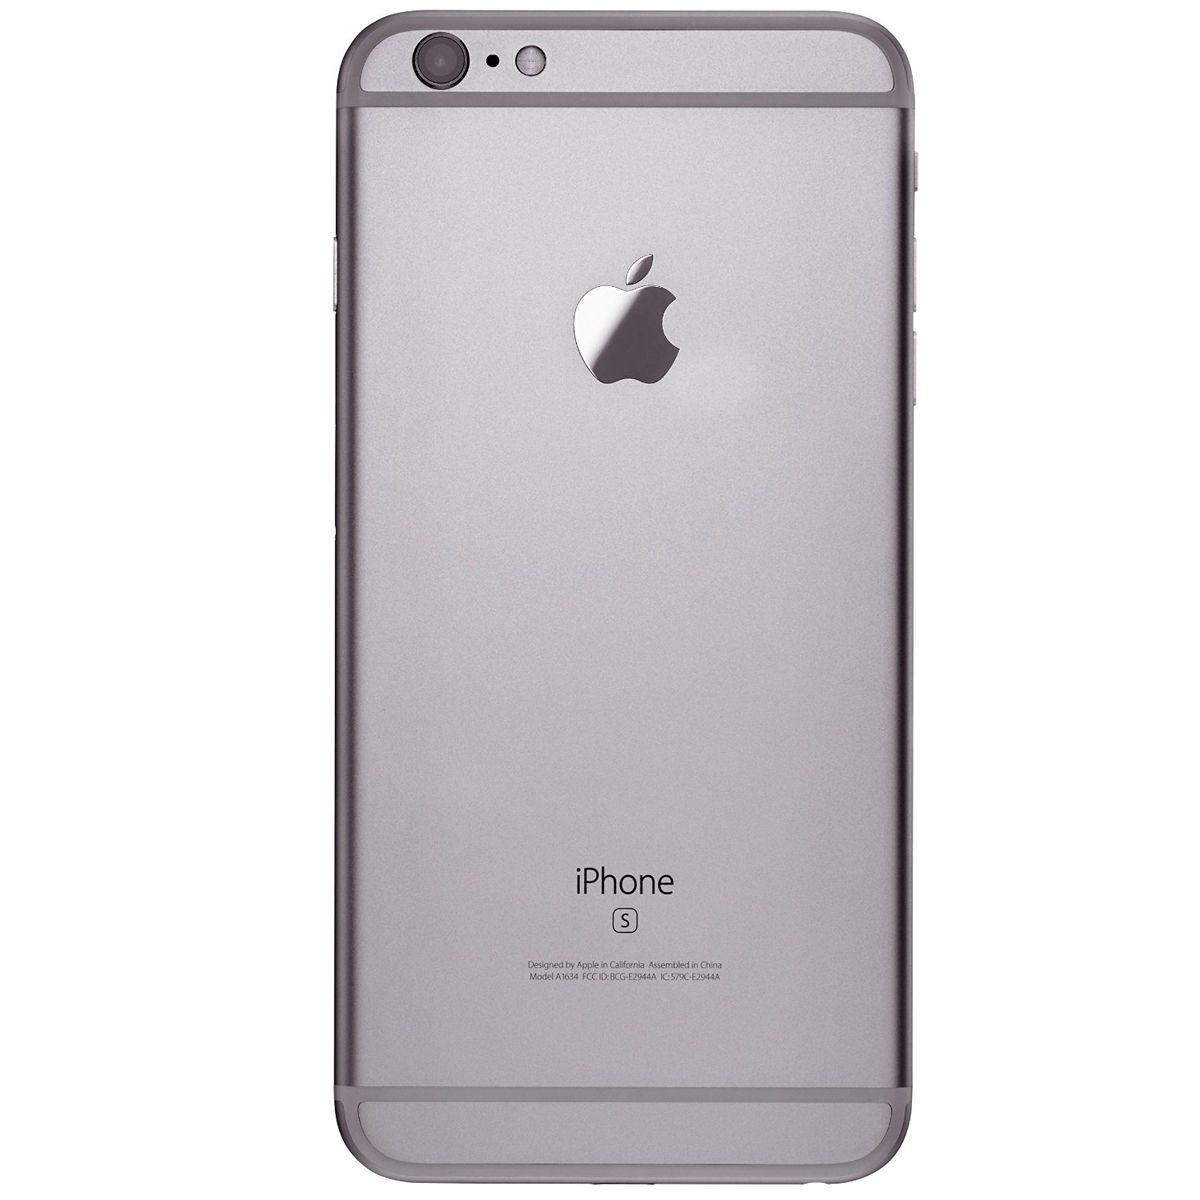 iPhone 6s Space Gray 16 GB SIMフリー - スマートフォン本体